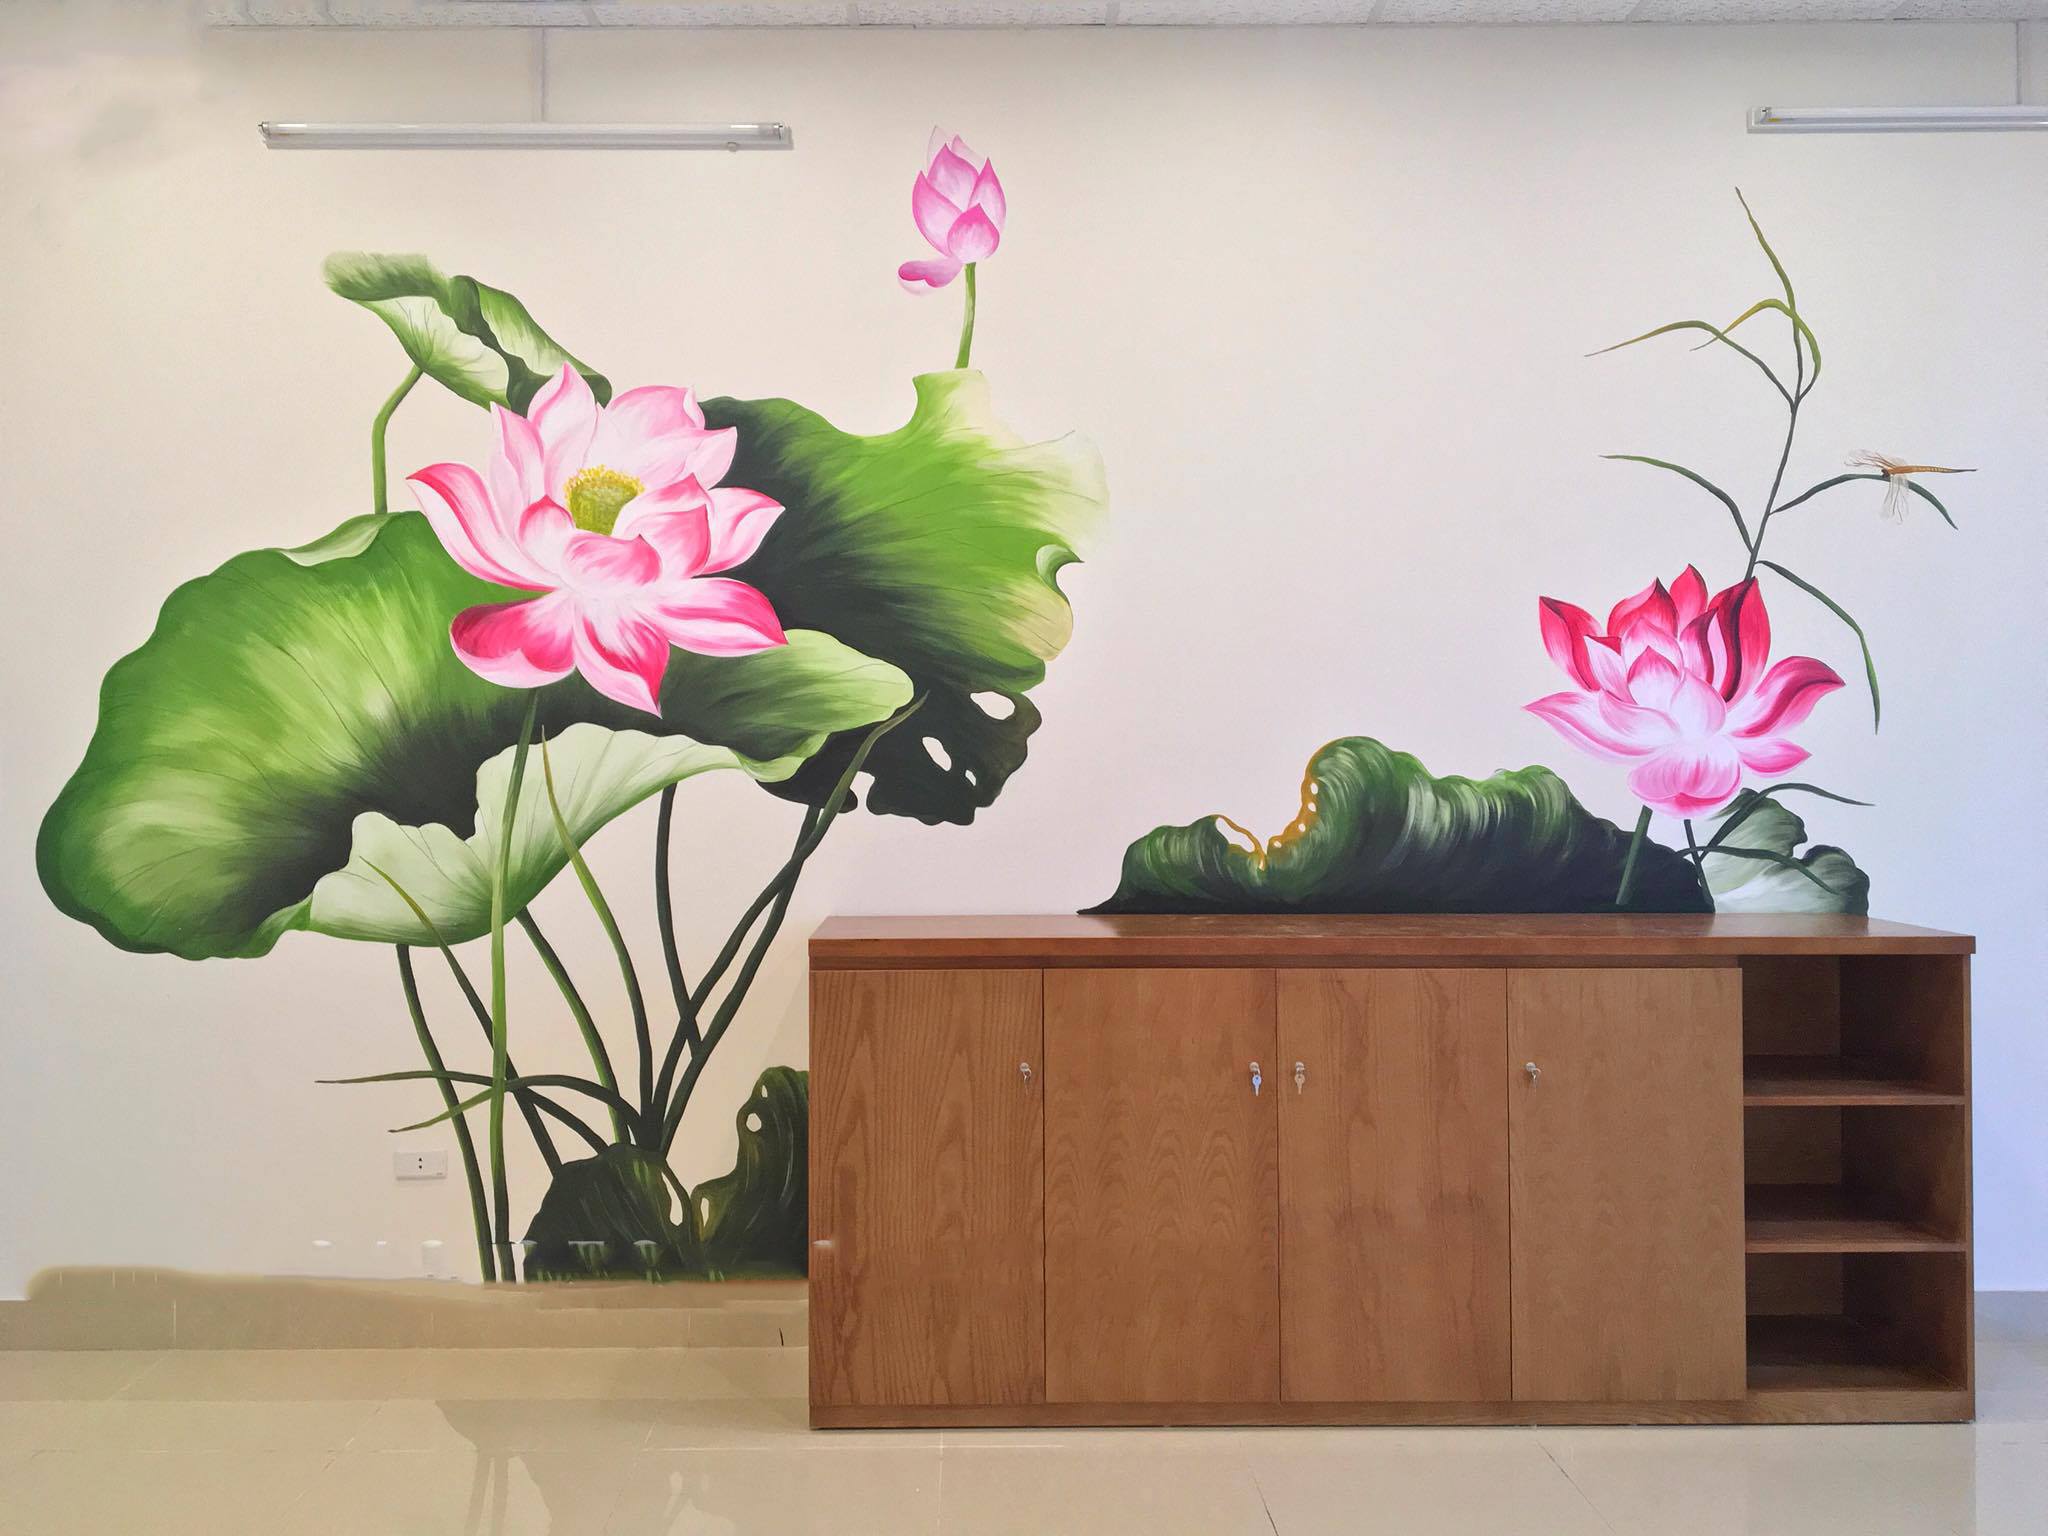 Tranh Tường Hoa Sen, Tranh Phong Cảnh Phòng Khách - Vẽ Tranh Tường 3D Mỹ  Thuật Trọng Tín Art